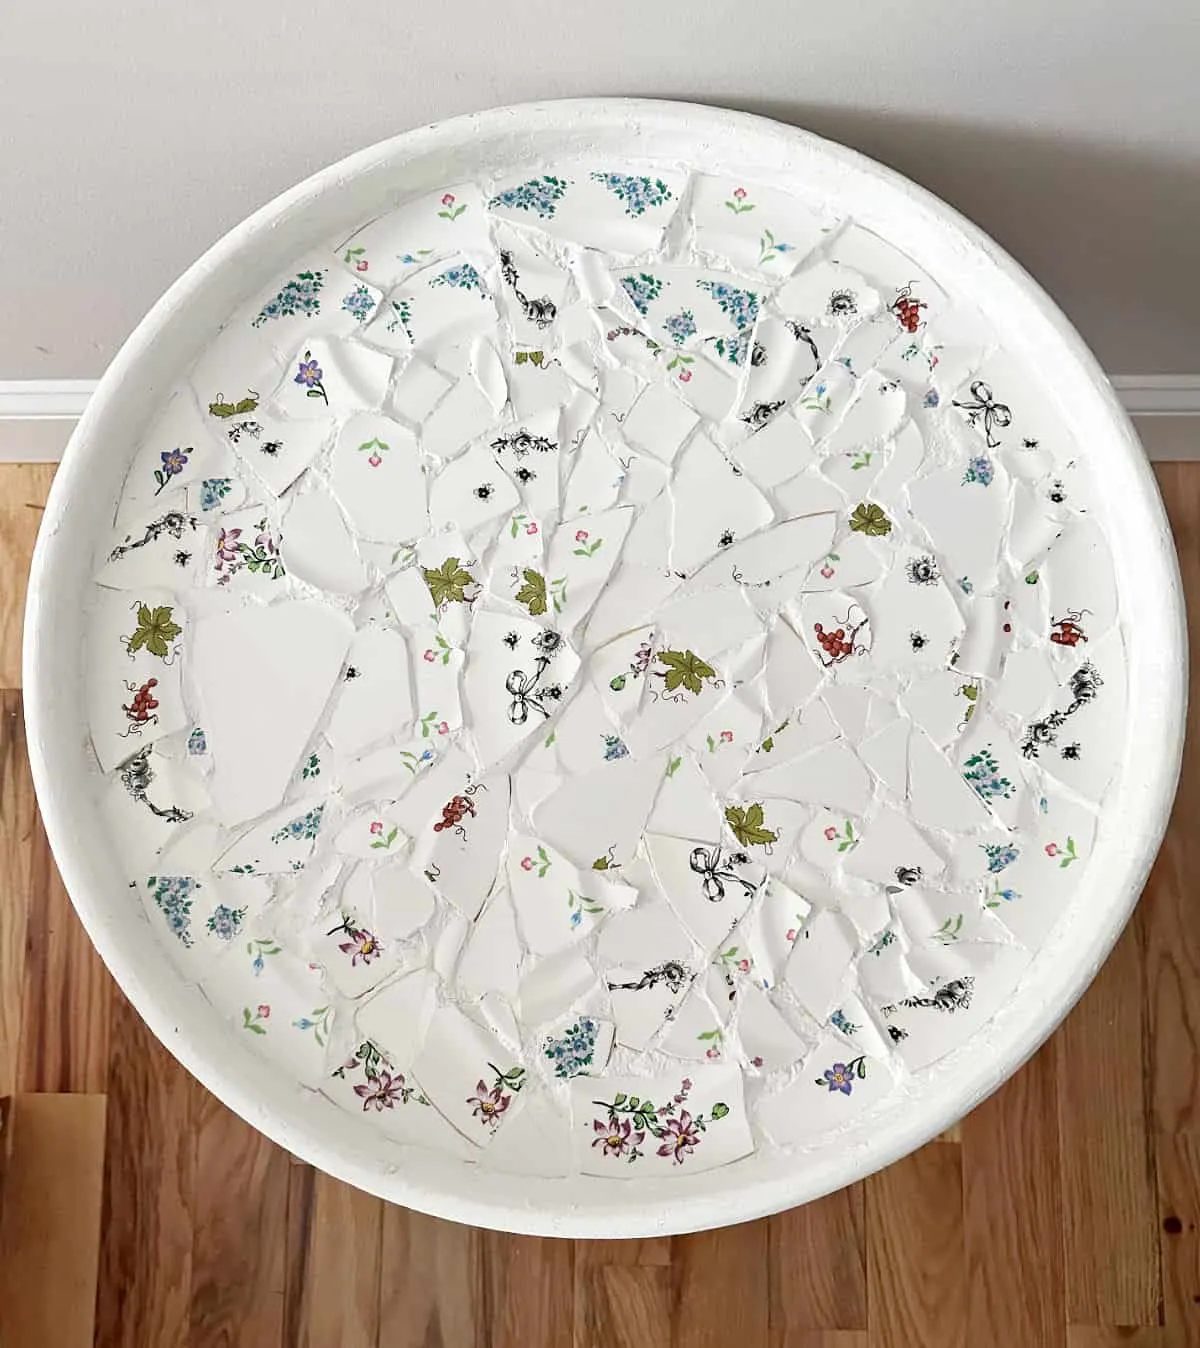 close up of broken dish mosaic table top